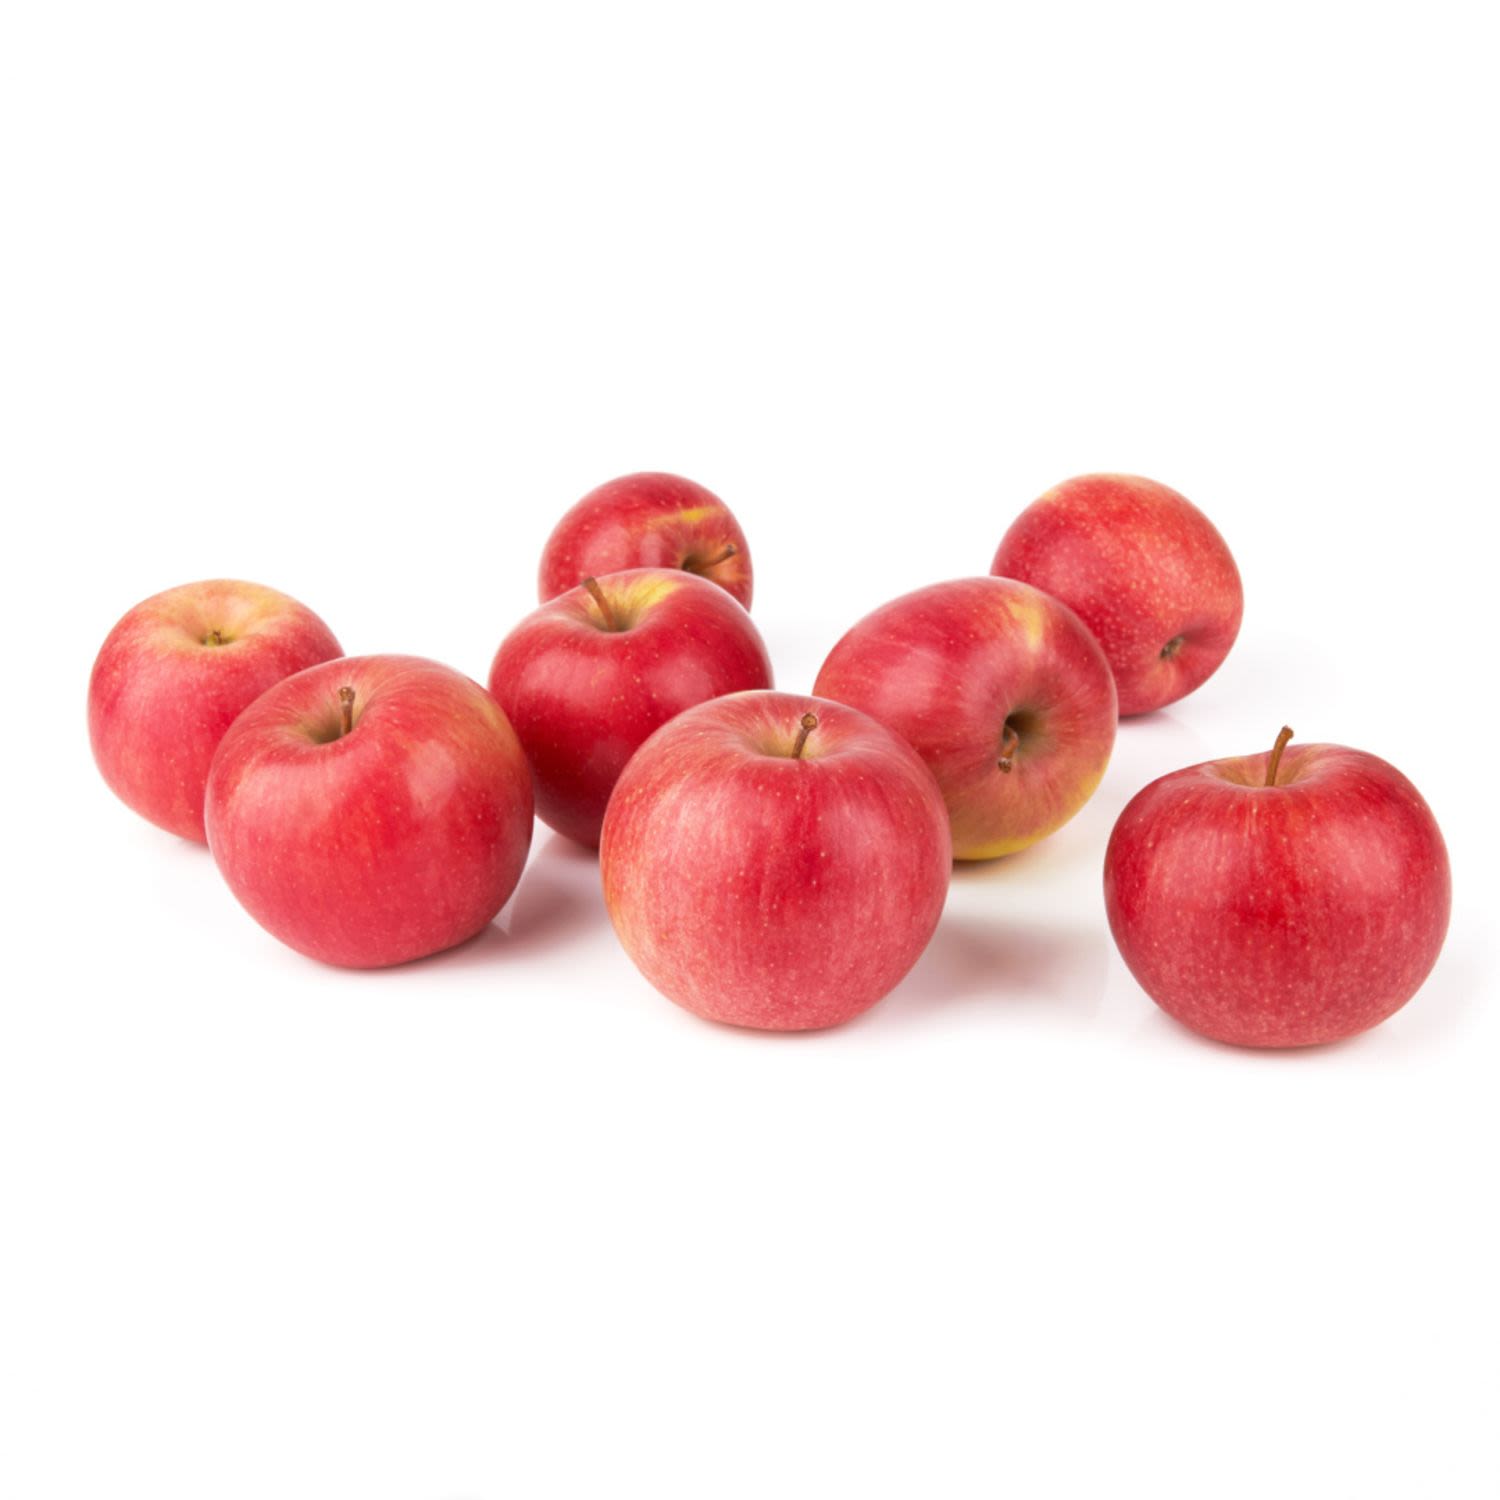 Pink Lady Apples Prepack 1kg, 1 Each